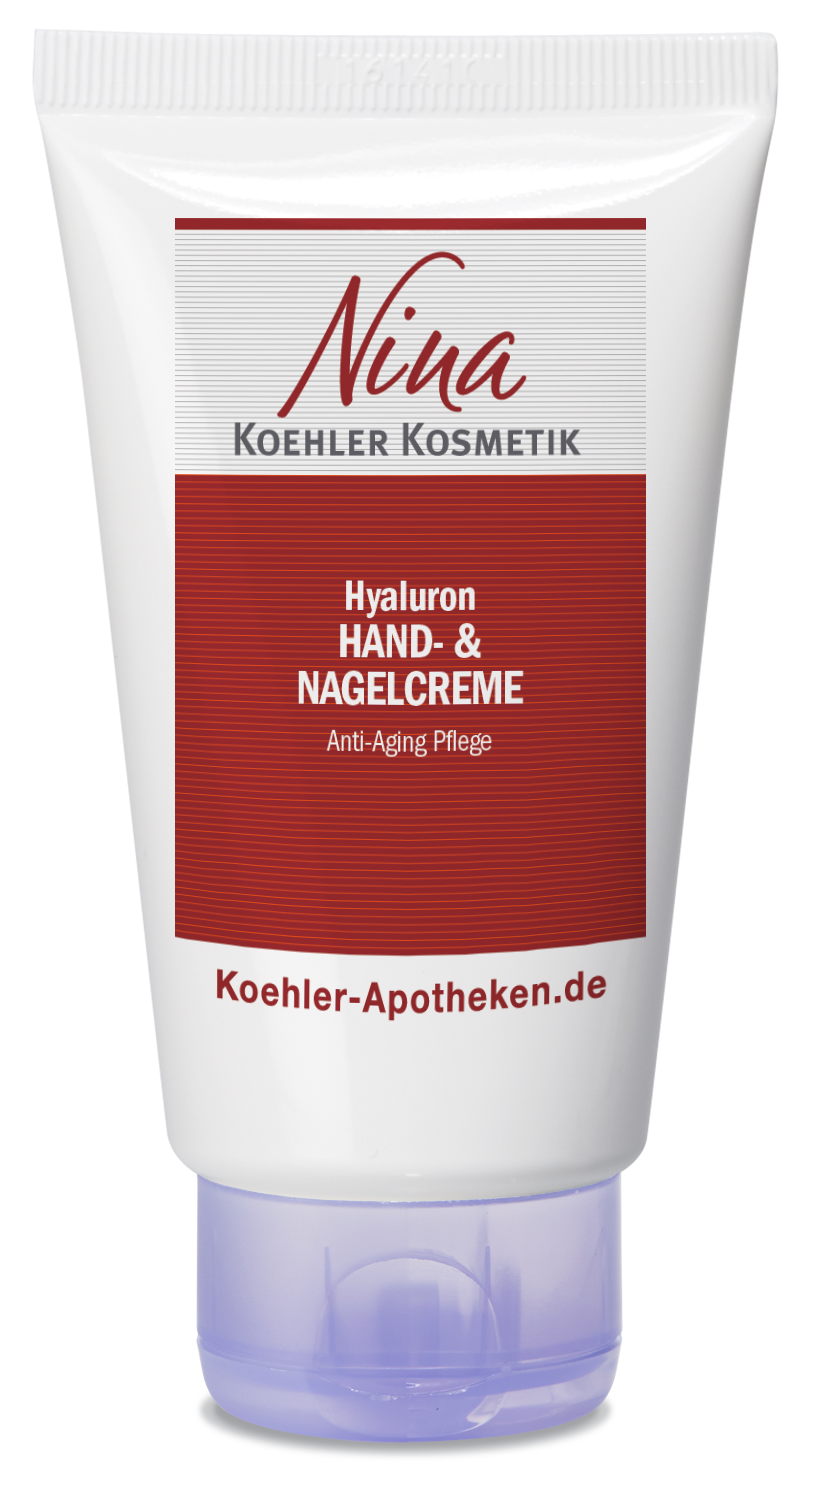 Nina Koehler Kosmetik Hyaluron Hand- und Nagelcreme 75 ml